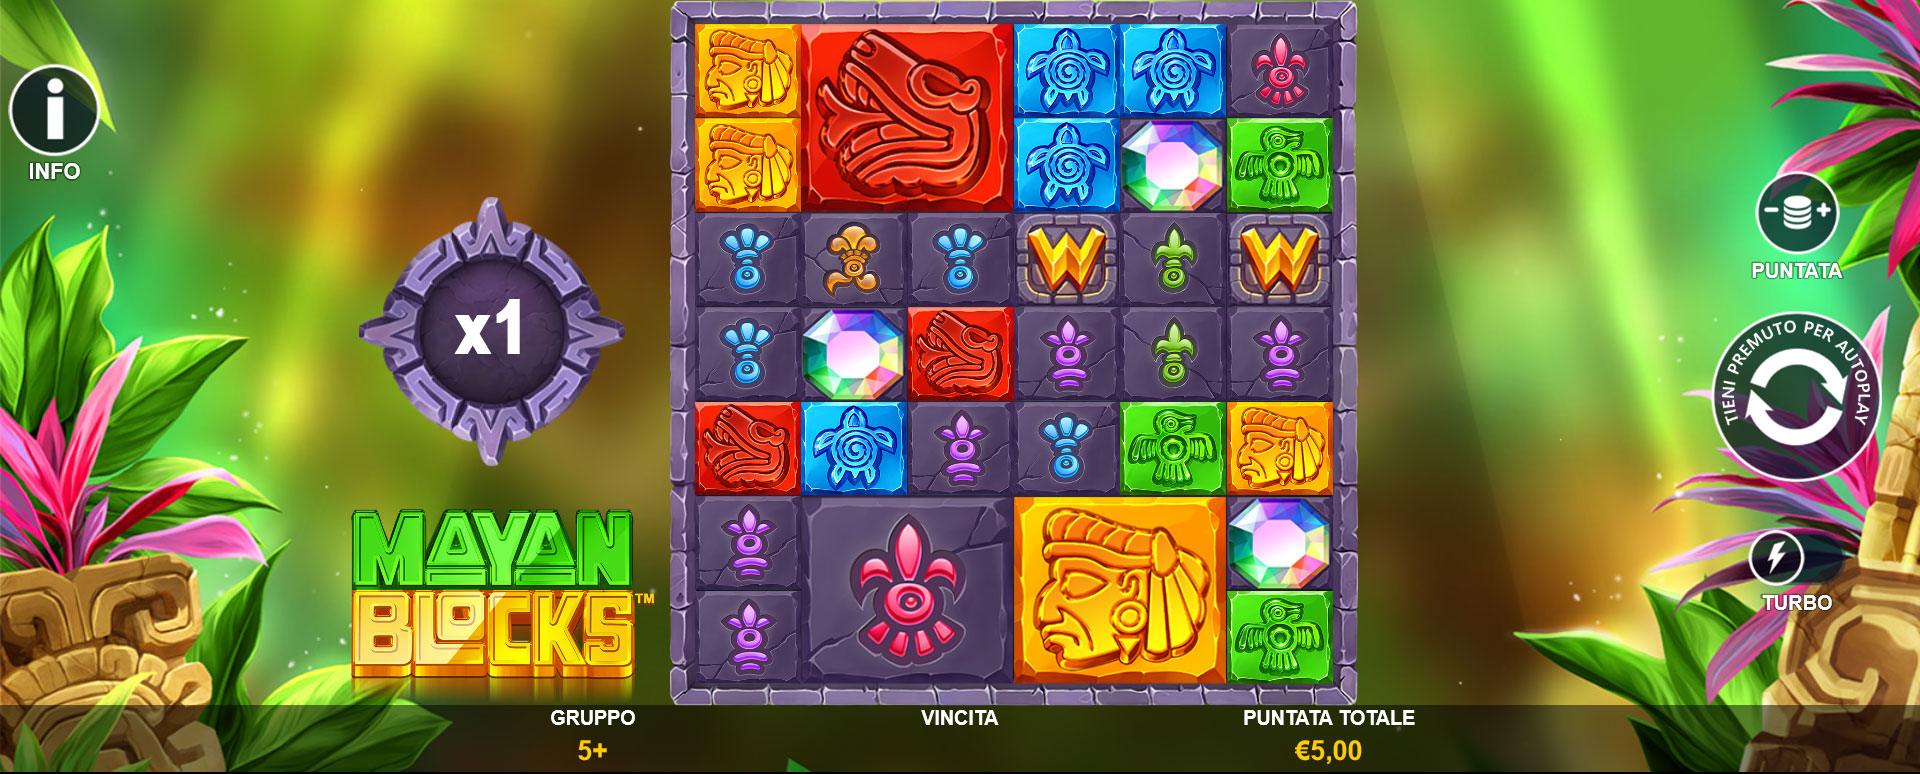 griglia del gioco slot online Mayan Blocks